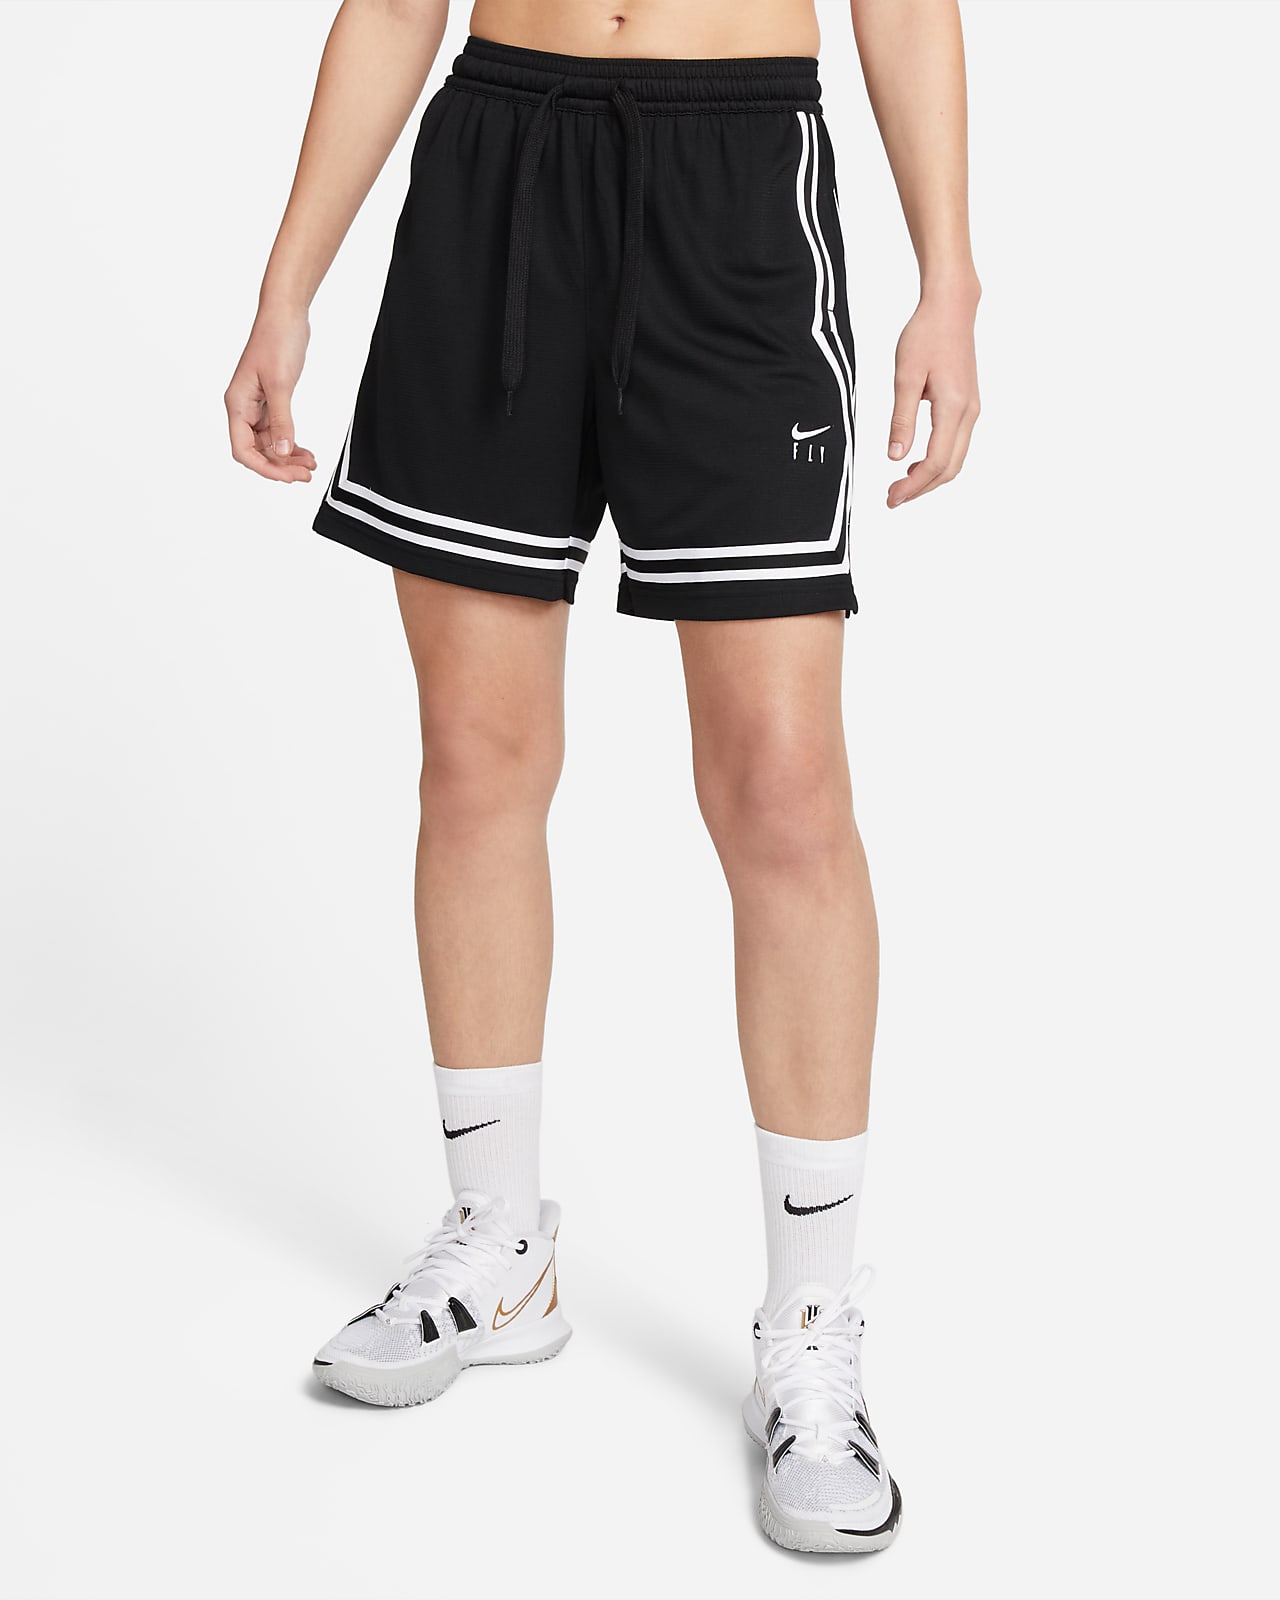 Nike Fly Crossover Kadın Basketbol Şortu